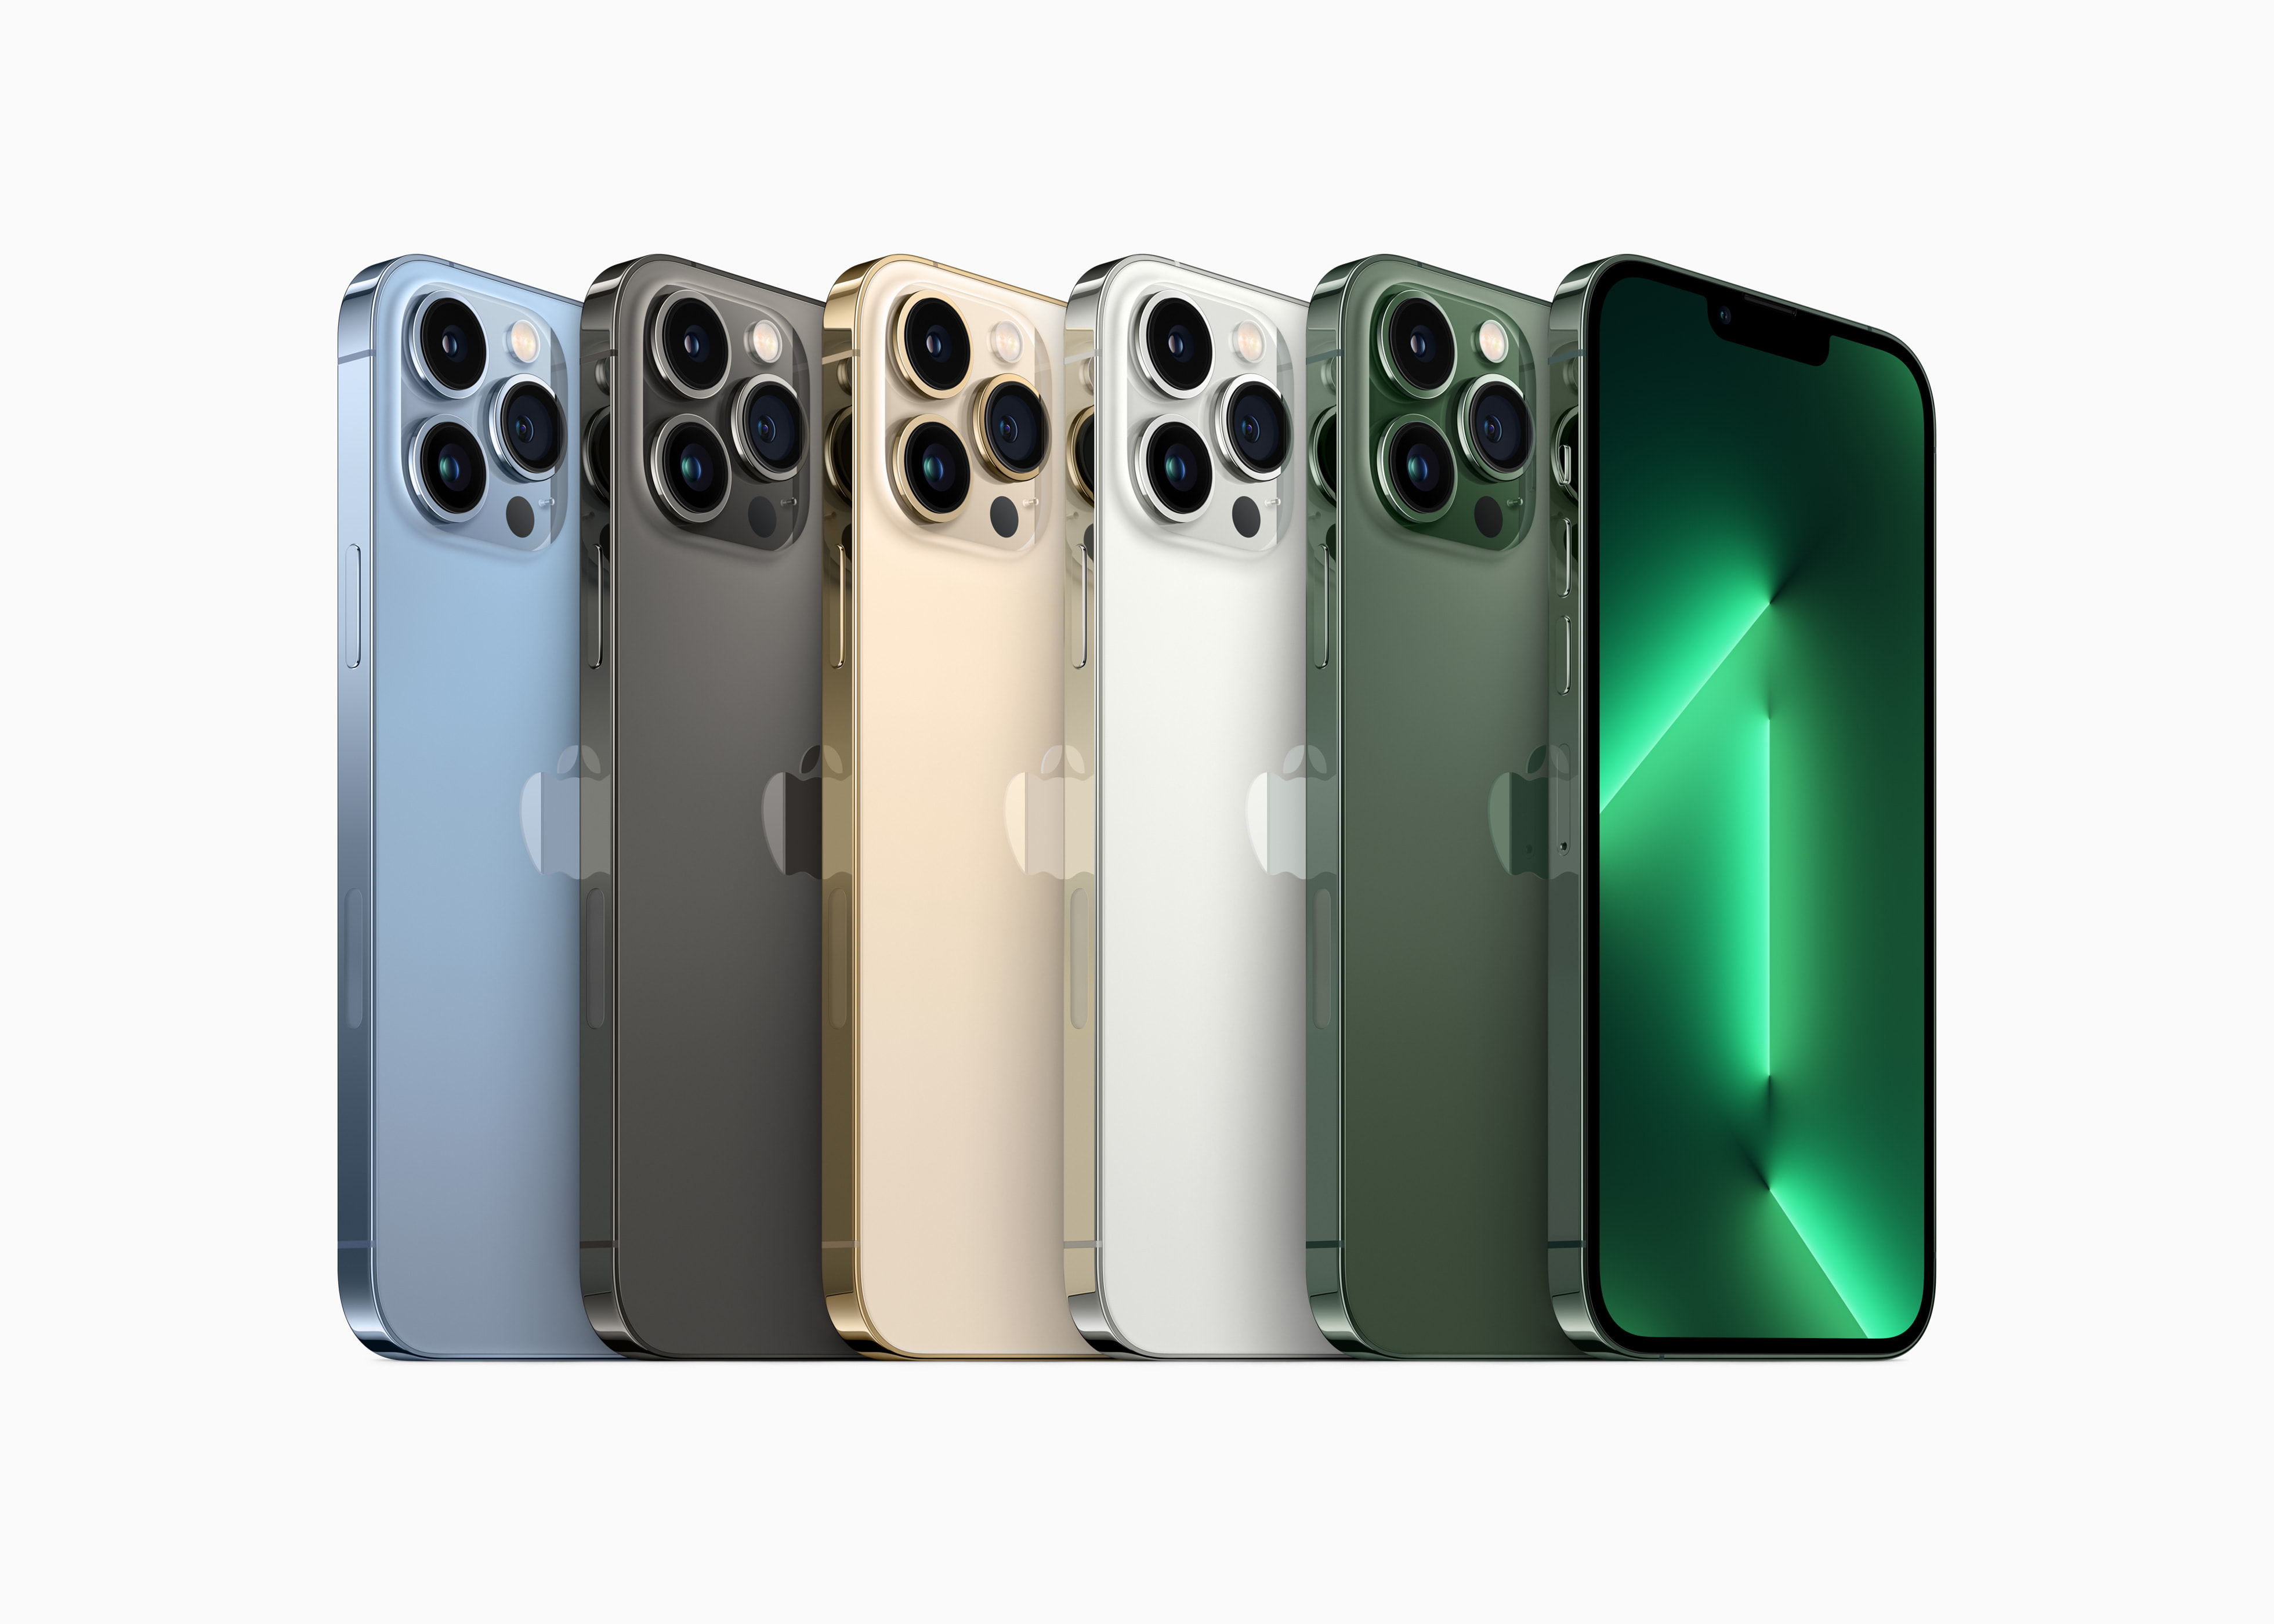 Apple introduce nuove splendide finiture verdi per la gamma iPhone 13 -  Apple (IT)